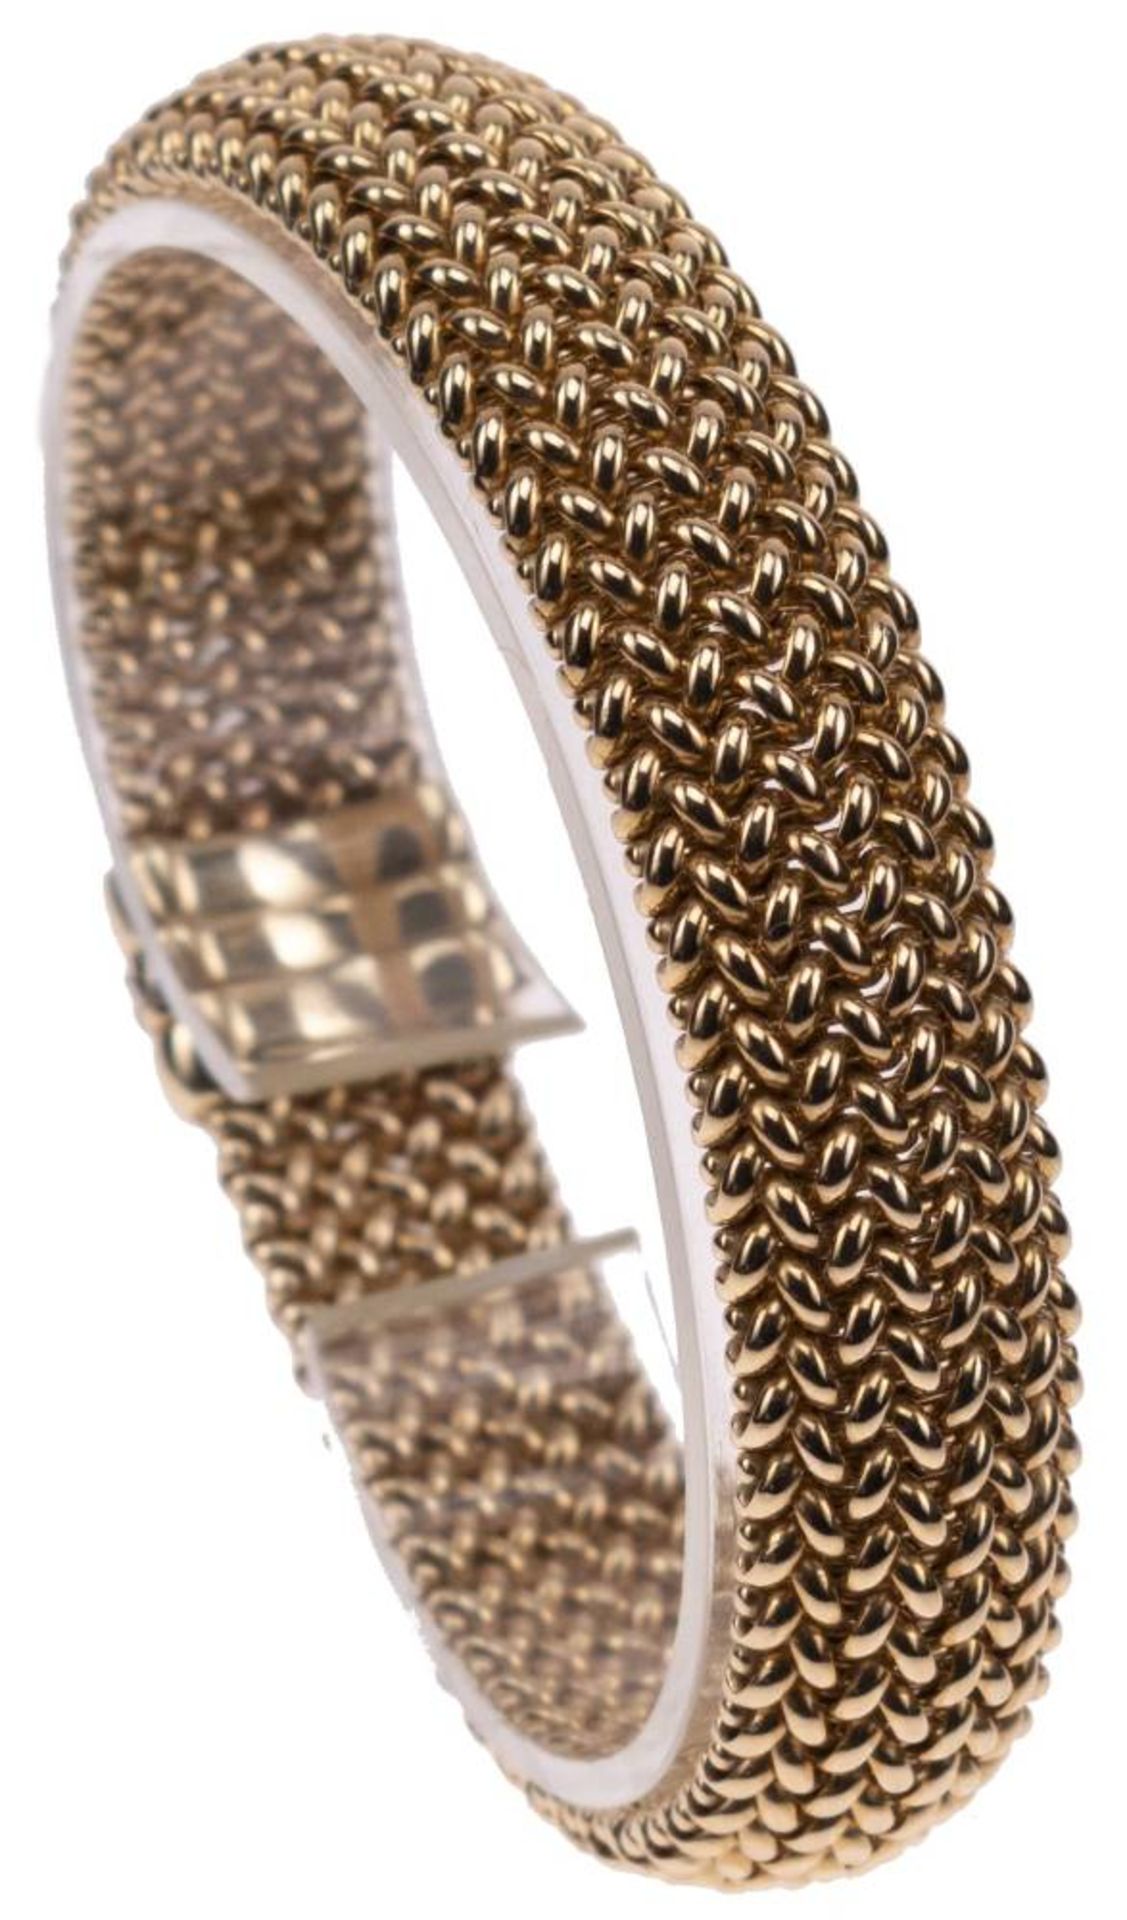 Milanaise Armband, 585 Gelbgold, Länge 19,5cm, Steckschließe mit Clipverschluss, fast ungetragen,